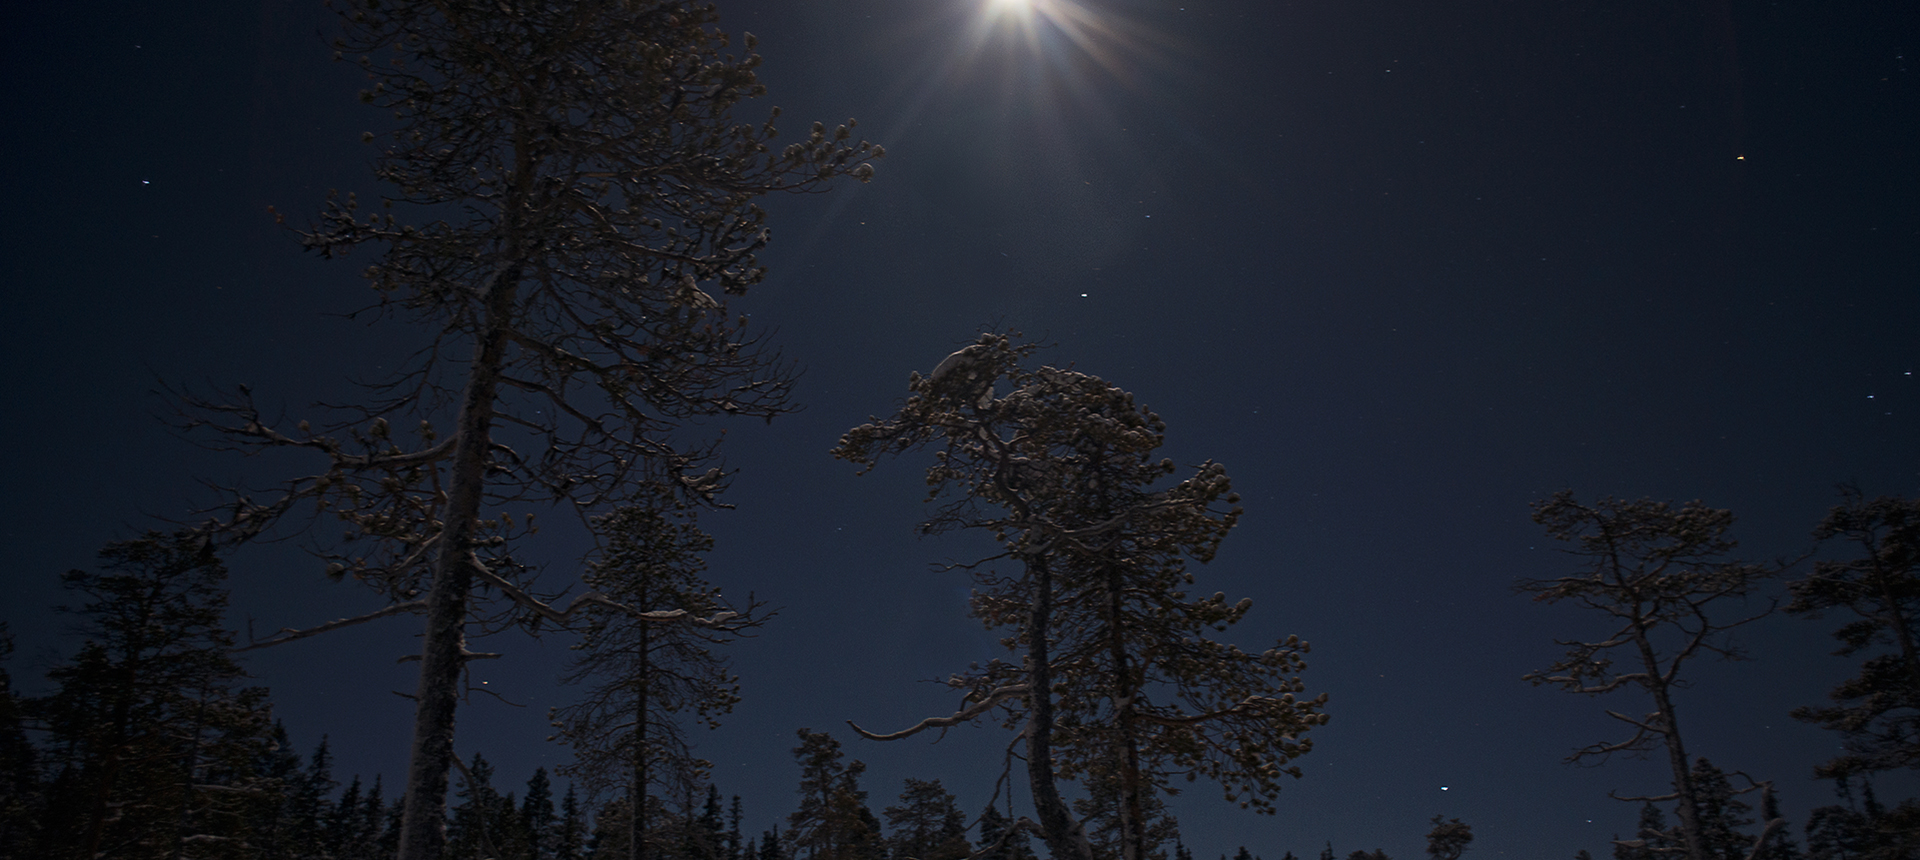 Vinternatt med månsken i gles skog.